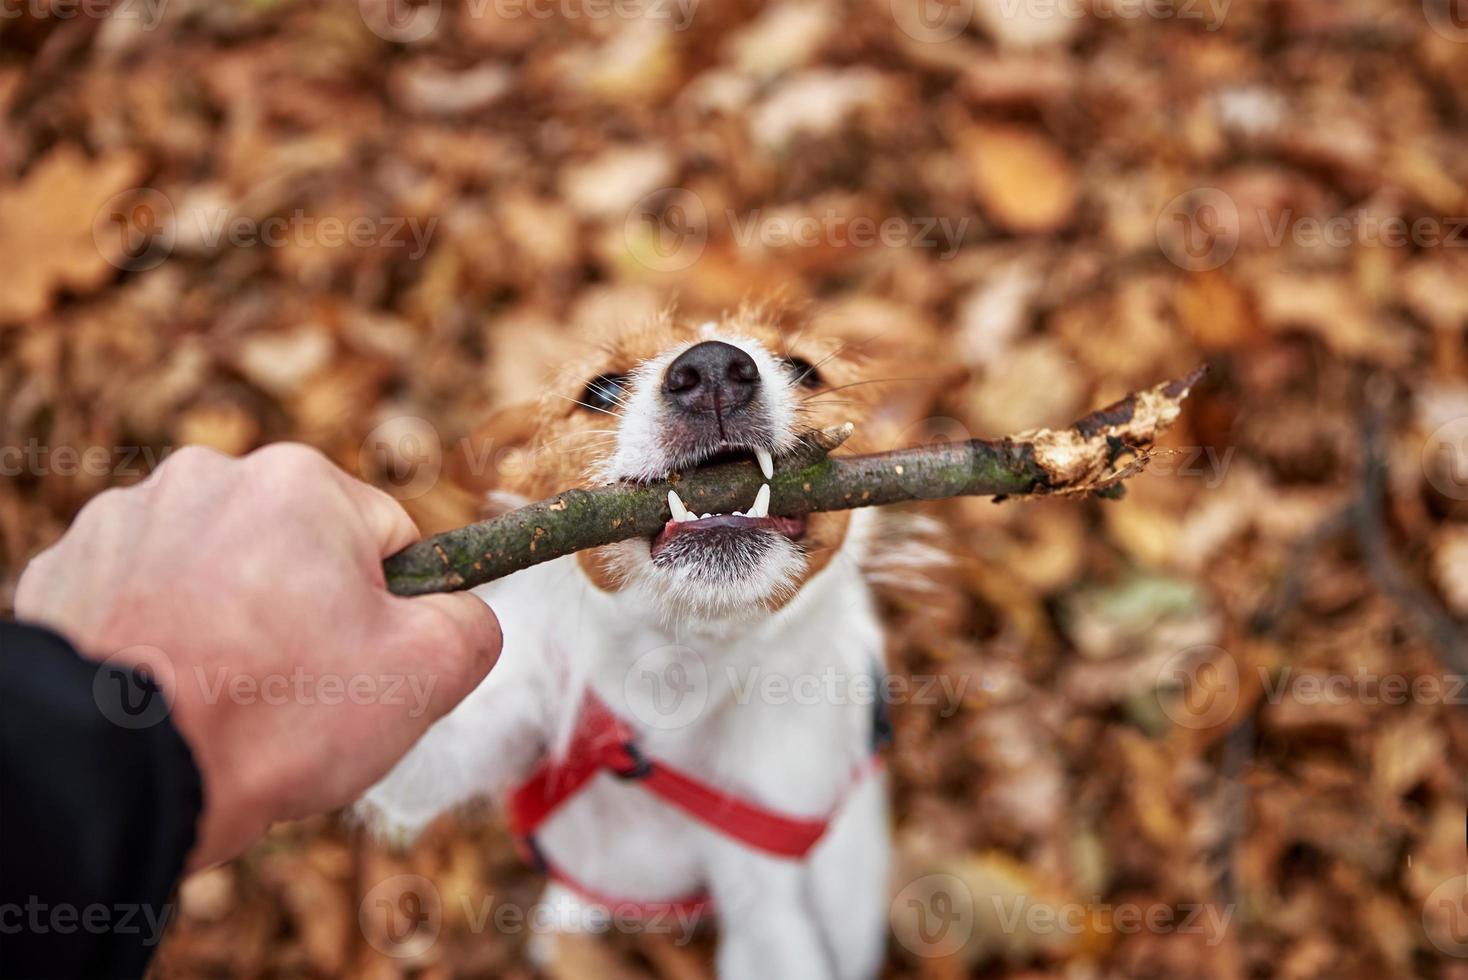 perro juega con una rama en el bosque de otoño foto